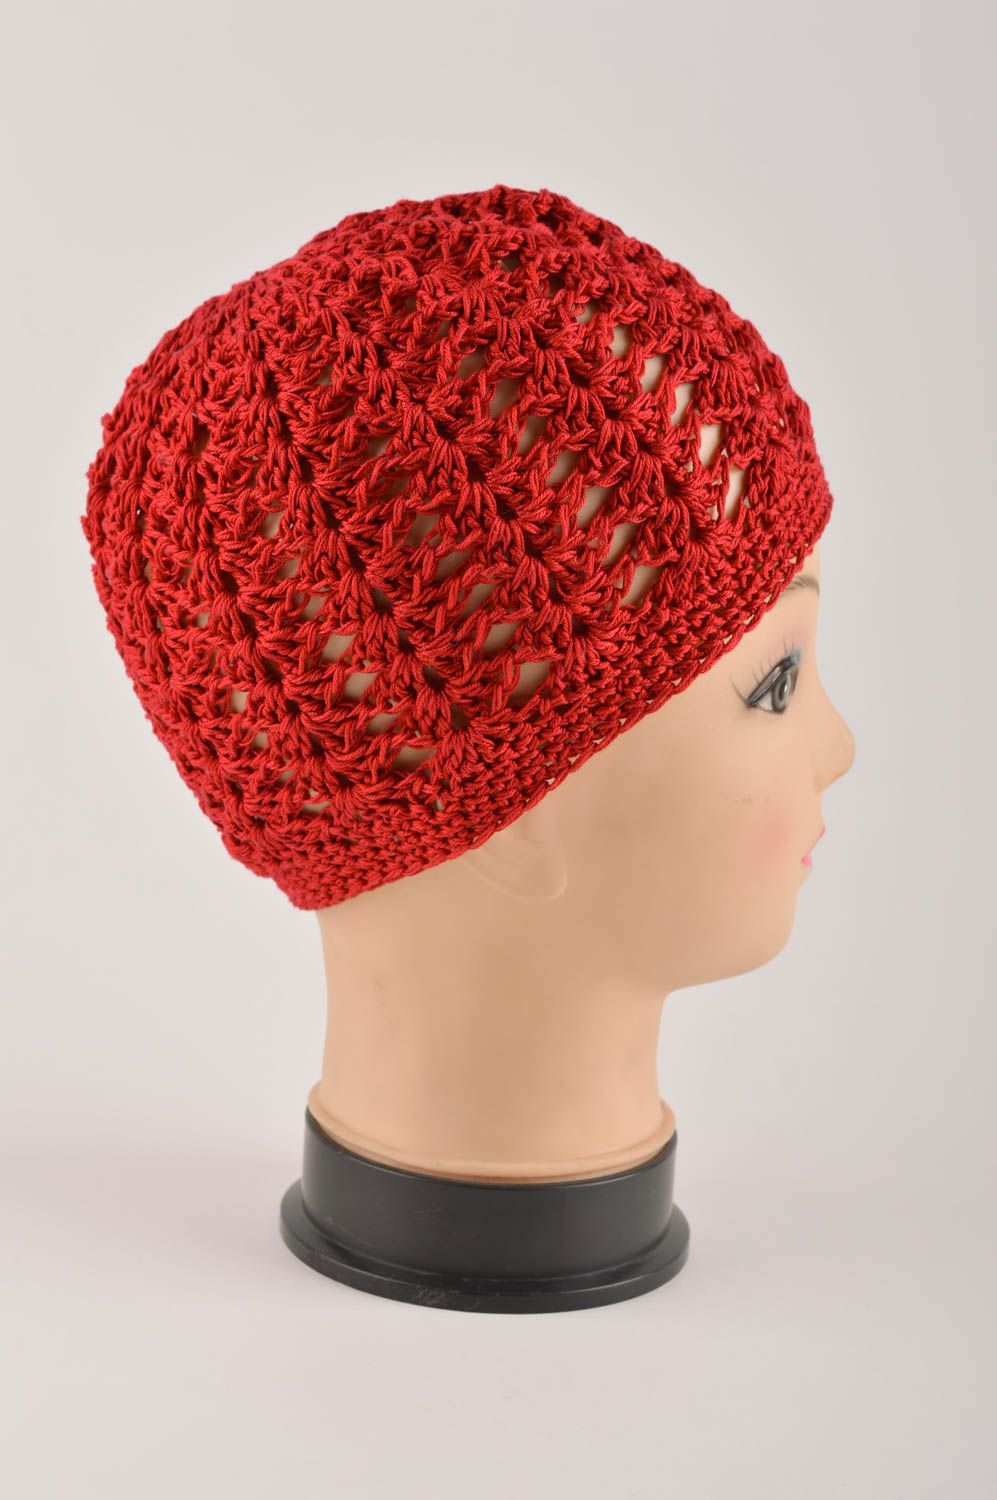 Handmade hat for girls warm woolen hat for winter designer baby hat gift ideas photo 4